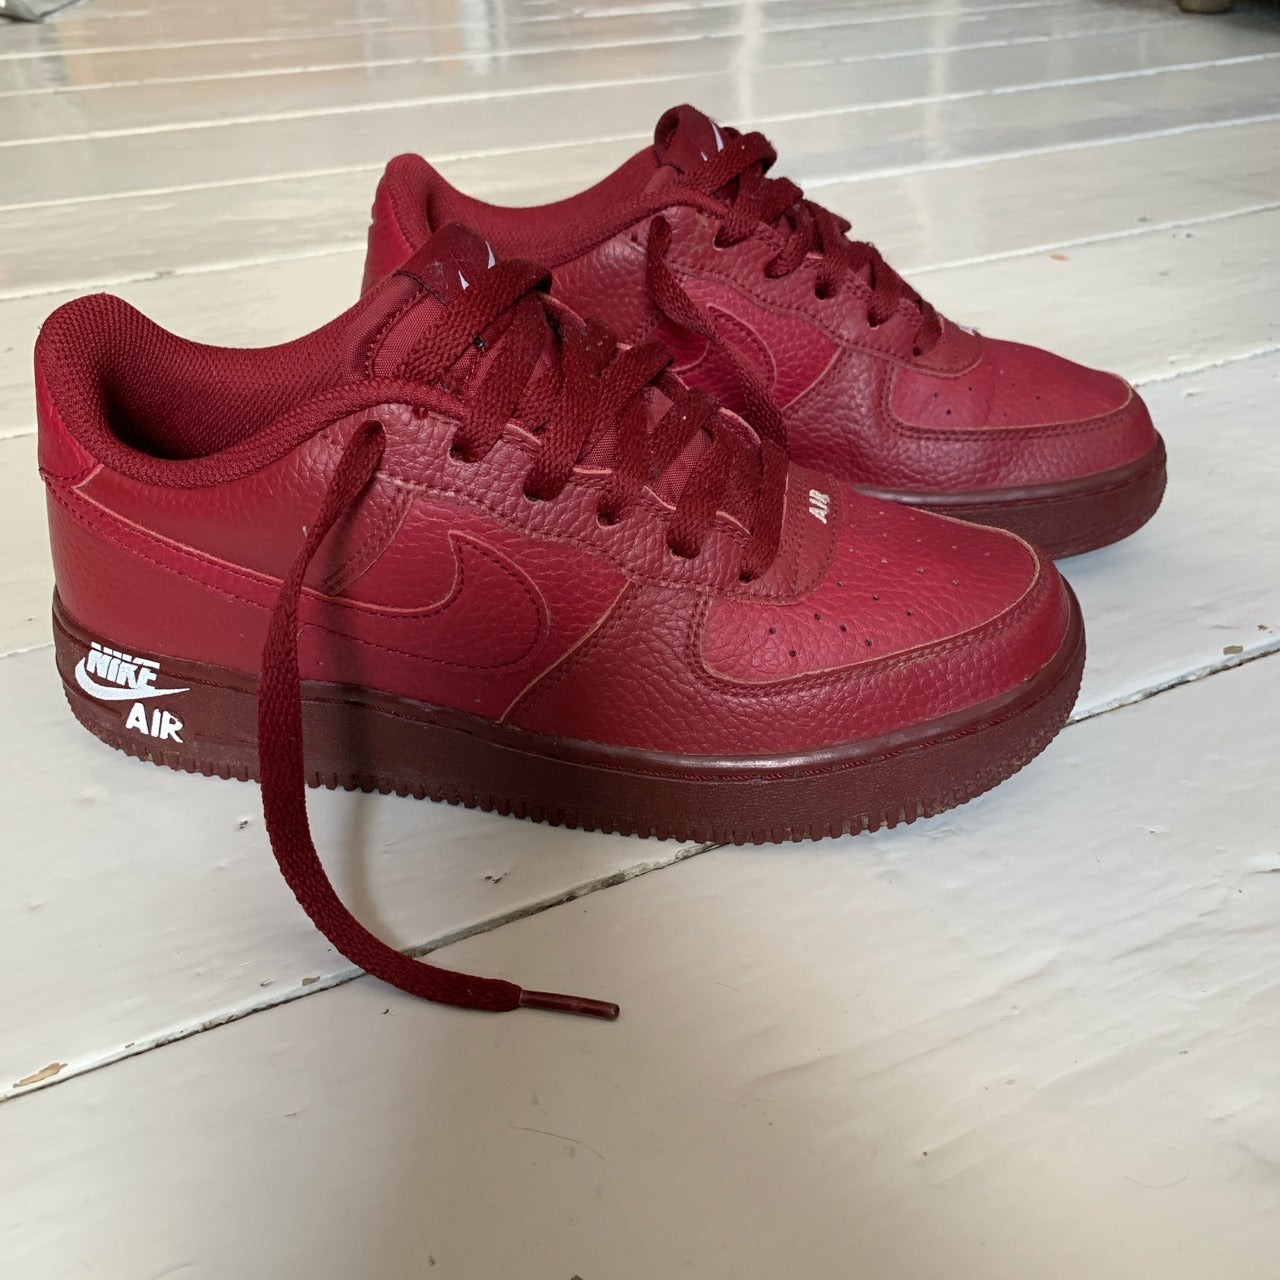 Nike Air Force 1 Burgundy Leather (UK 5.5)